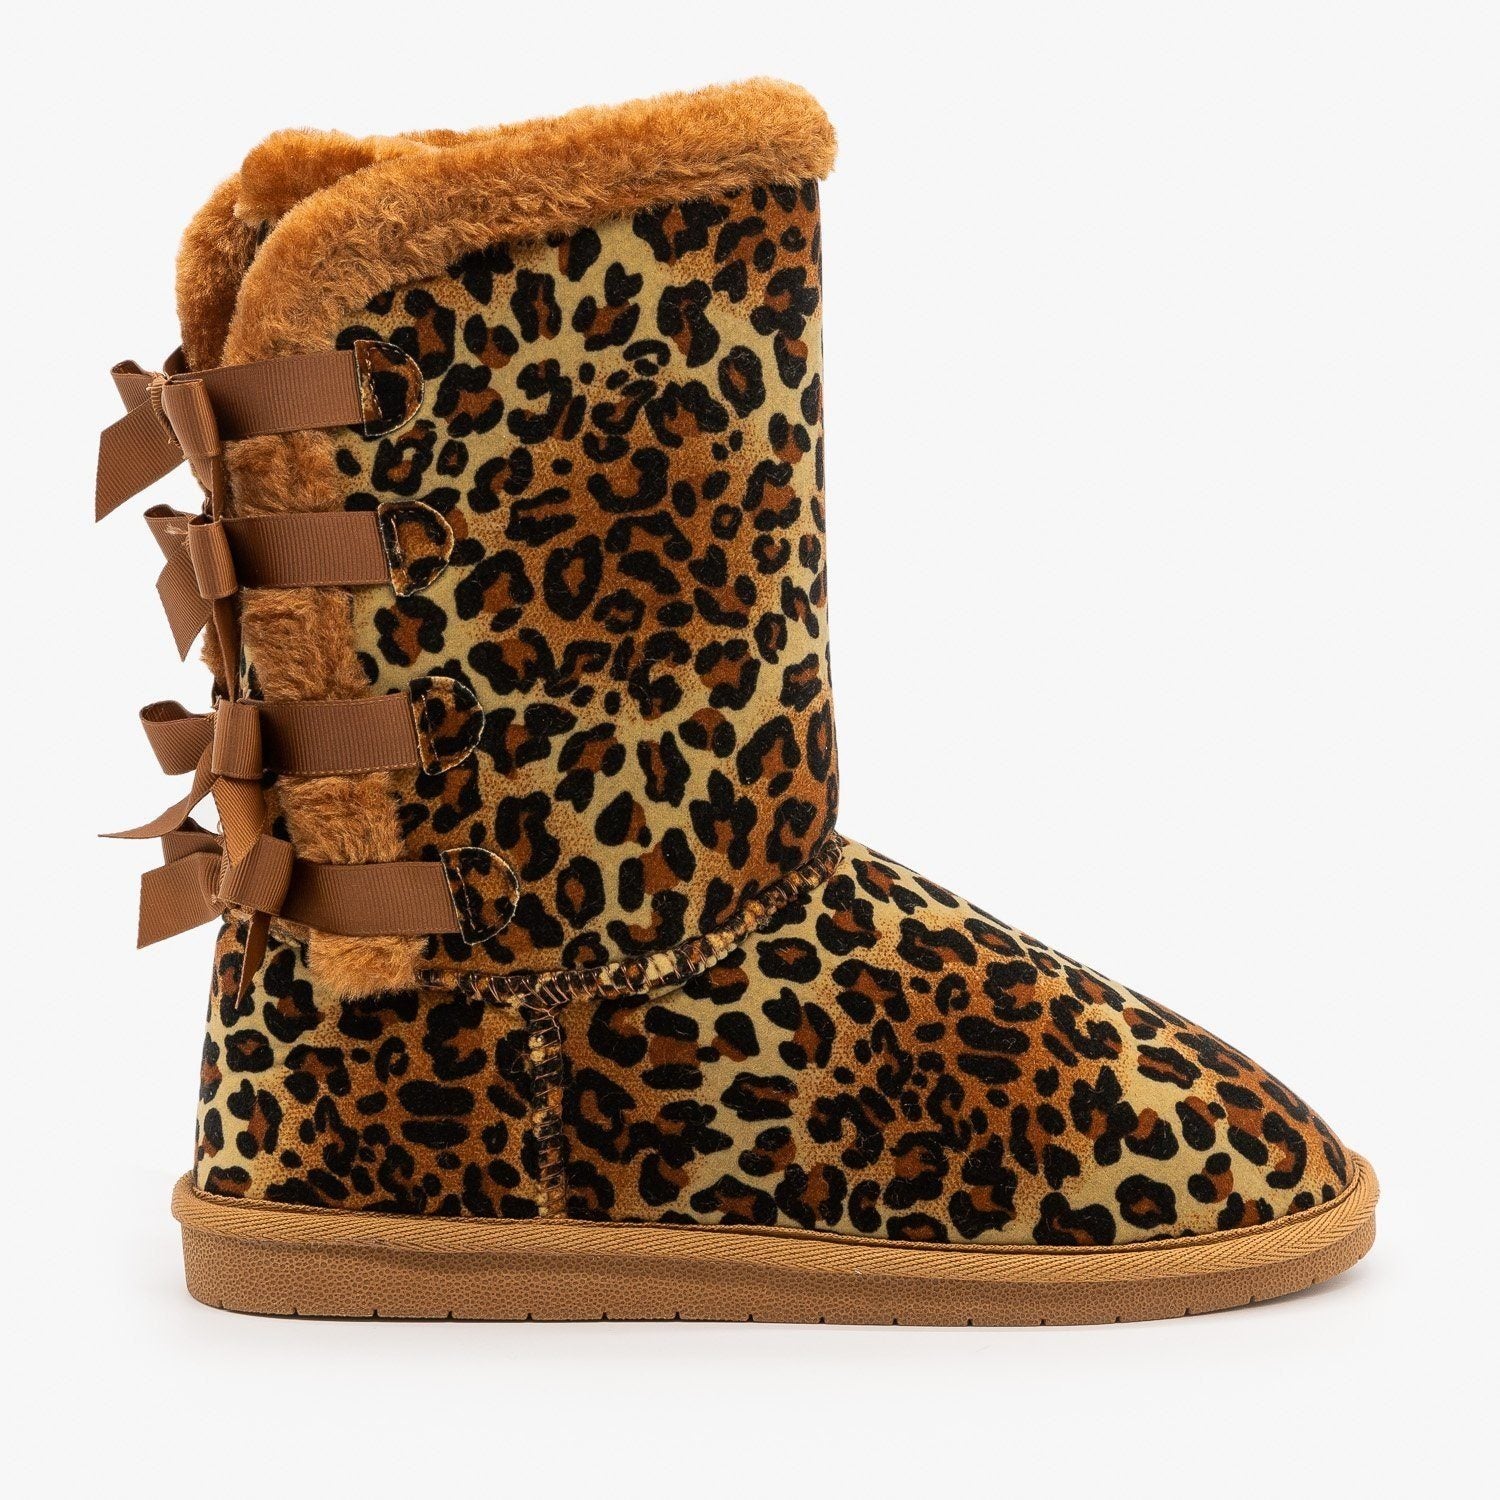 leopard print comfort shoes